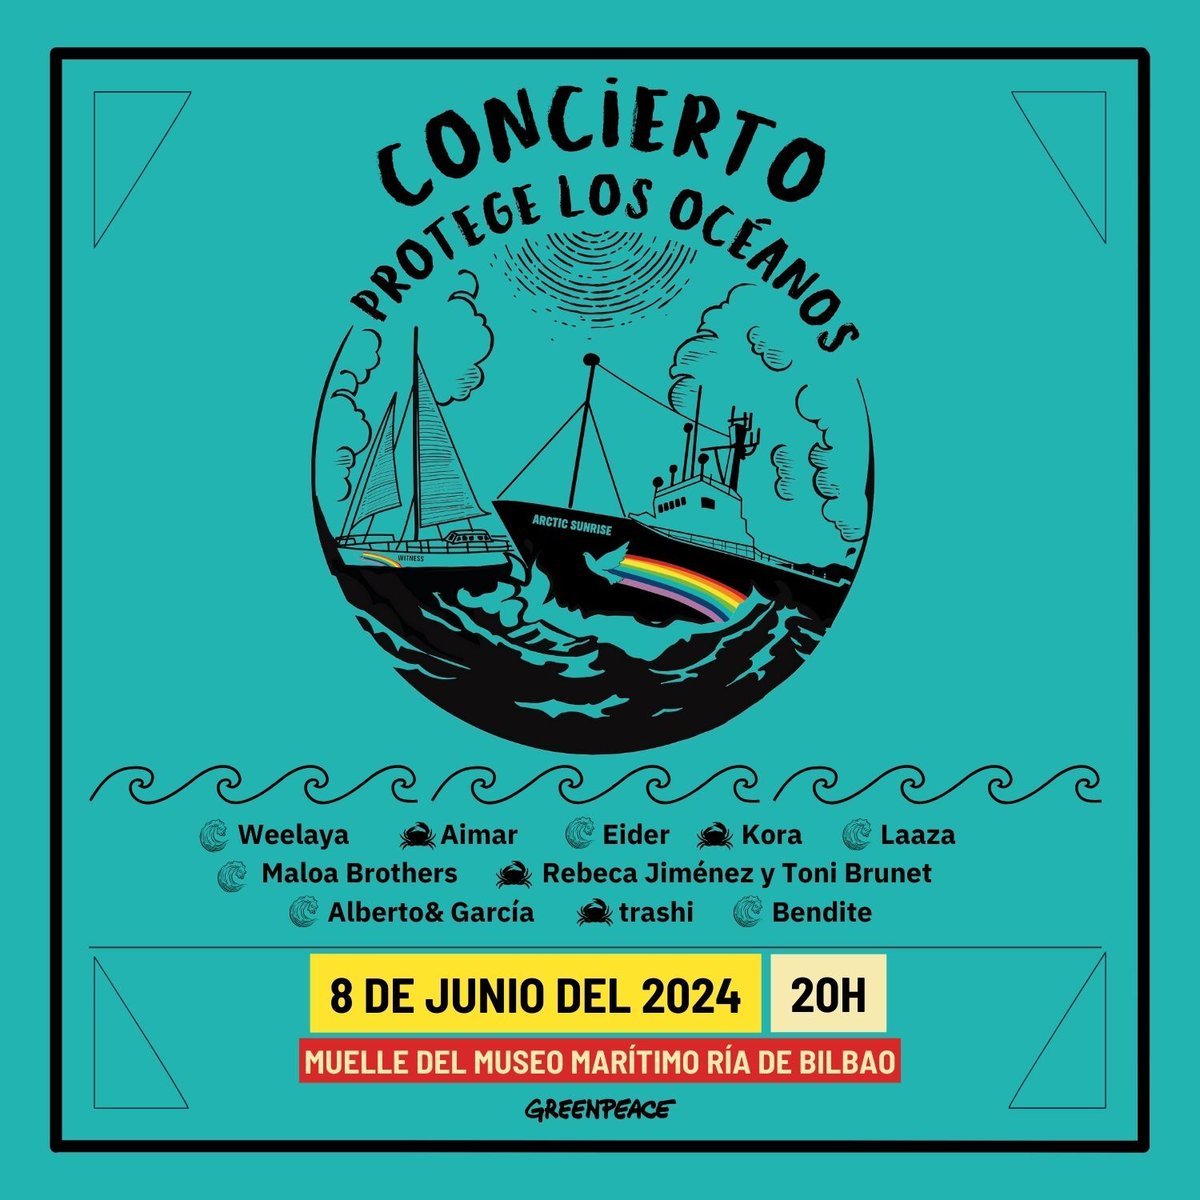 Además, Día Mundial de los Océanos ¡ven al concierto especial #ProtegeLosOcéanos!  🎶🐠🌊🪸💙
Artistas comprometidos unirán sus voces para recordar la importancia de proteger nuestros océanos

📍Arctic Sunrise, Muelle del Museo Marítimo Ría de Bilbao
¡Todo el mundo es bienvenido!